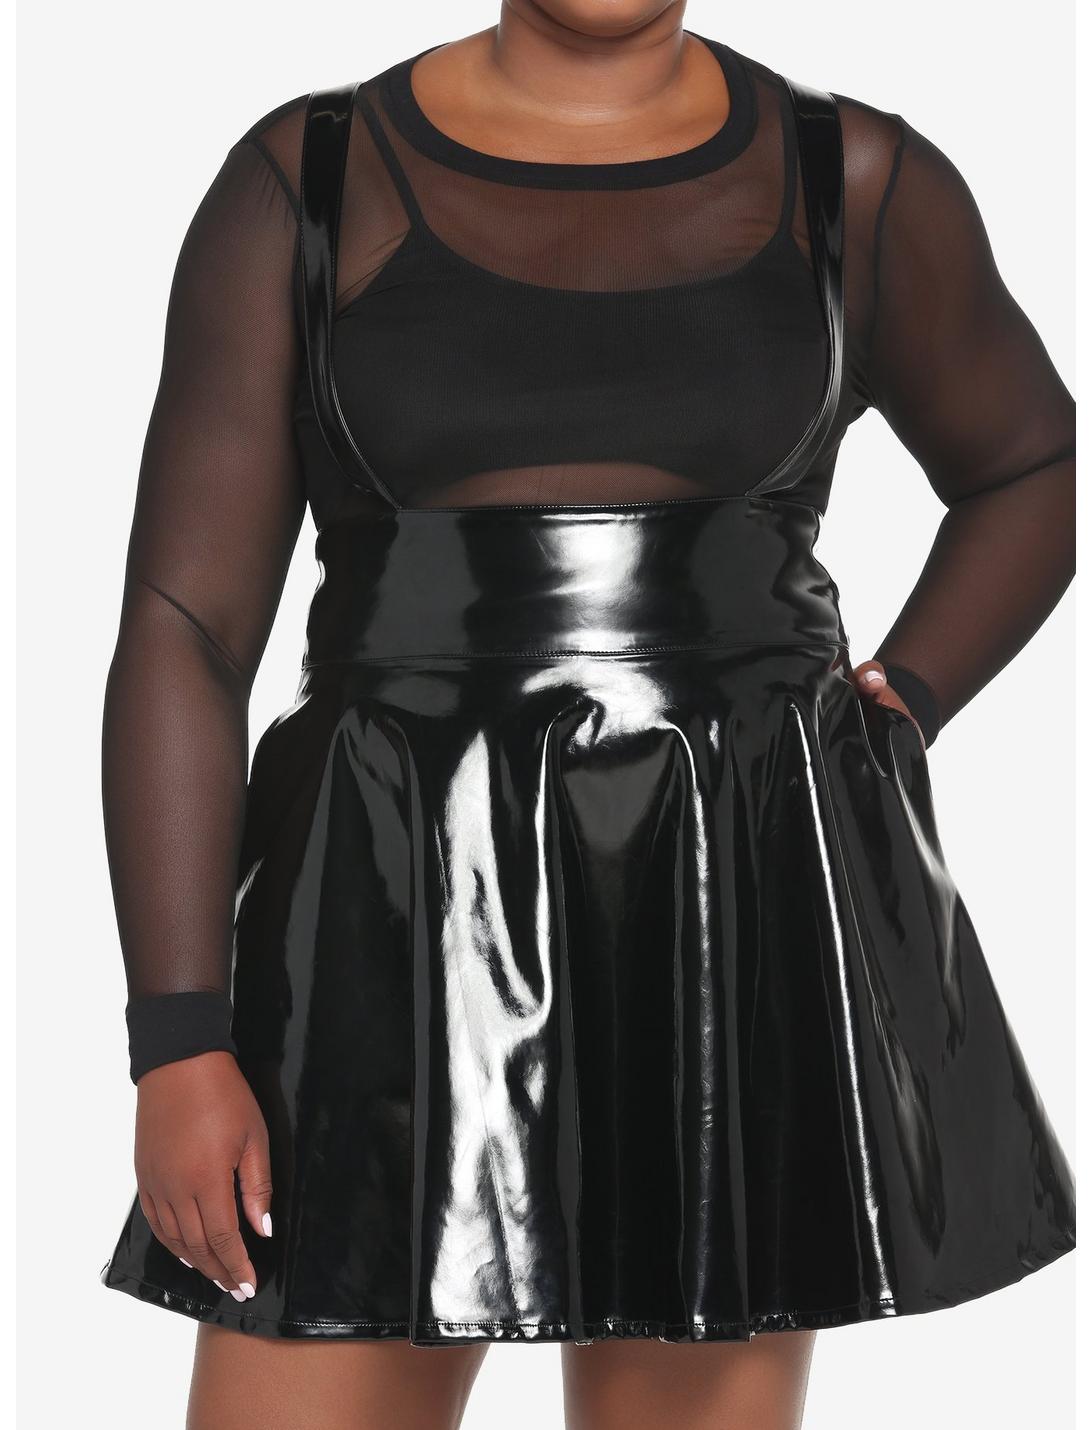 Black Patent Faux Leather Suspender Skirt Plus Size, BLACK, hi-res